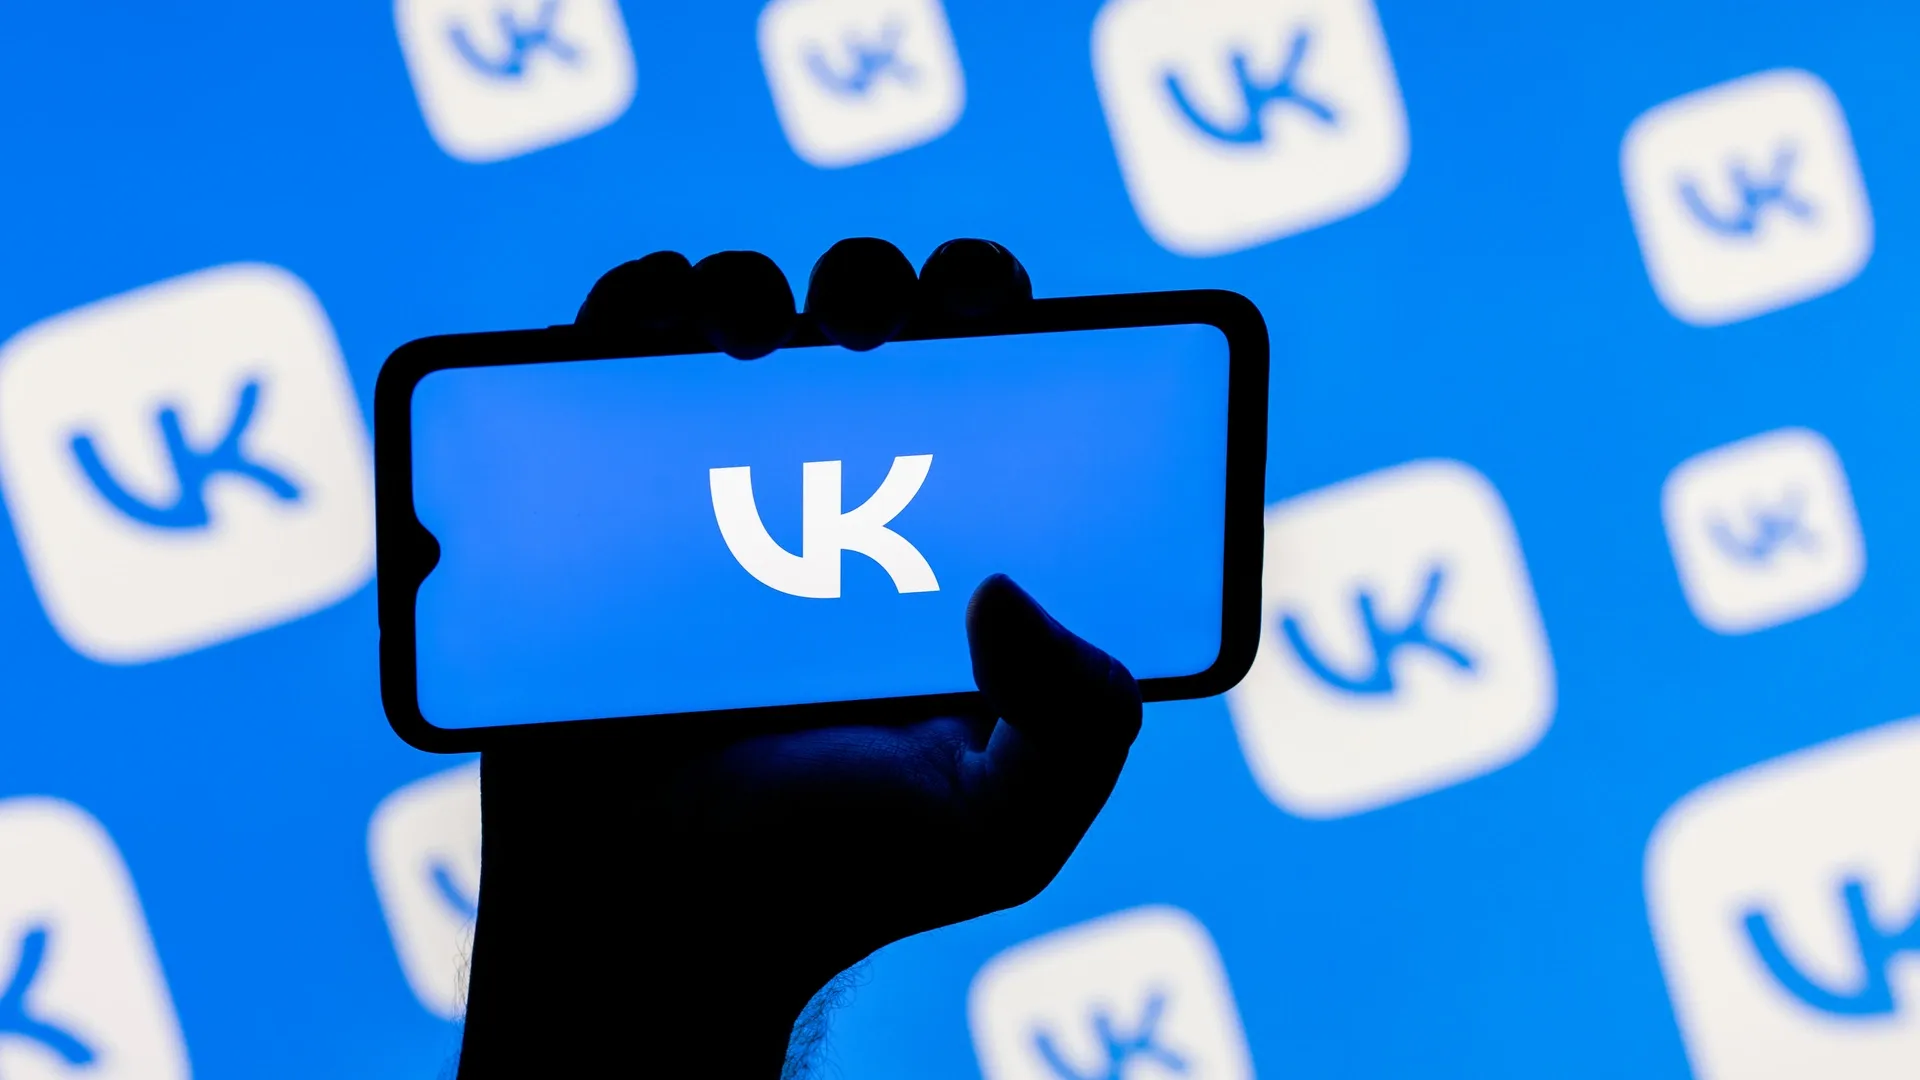 VK предупредит пользователя о возможной утечке данных. Фото: Sergei Elagin / Shutterstock.com